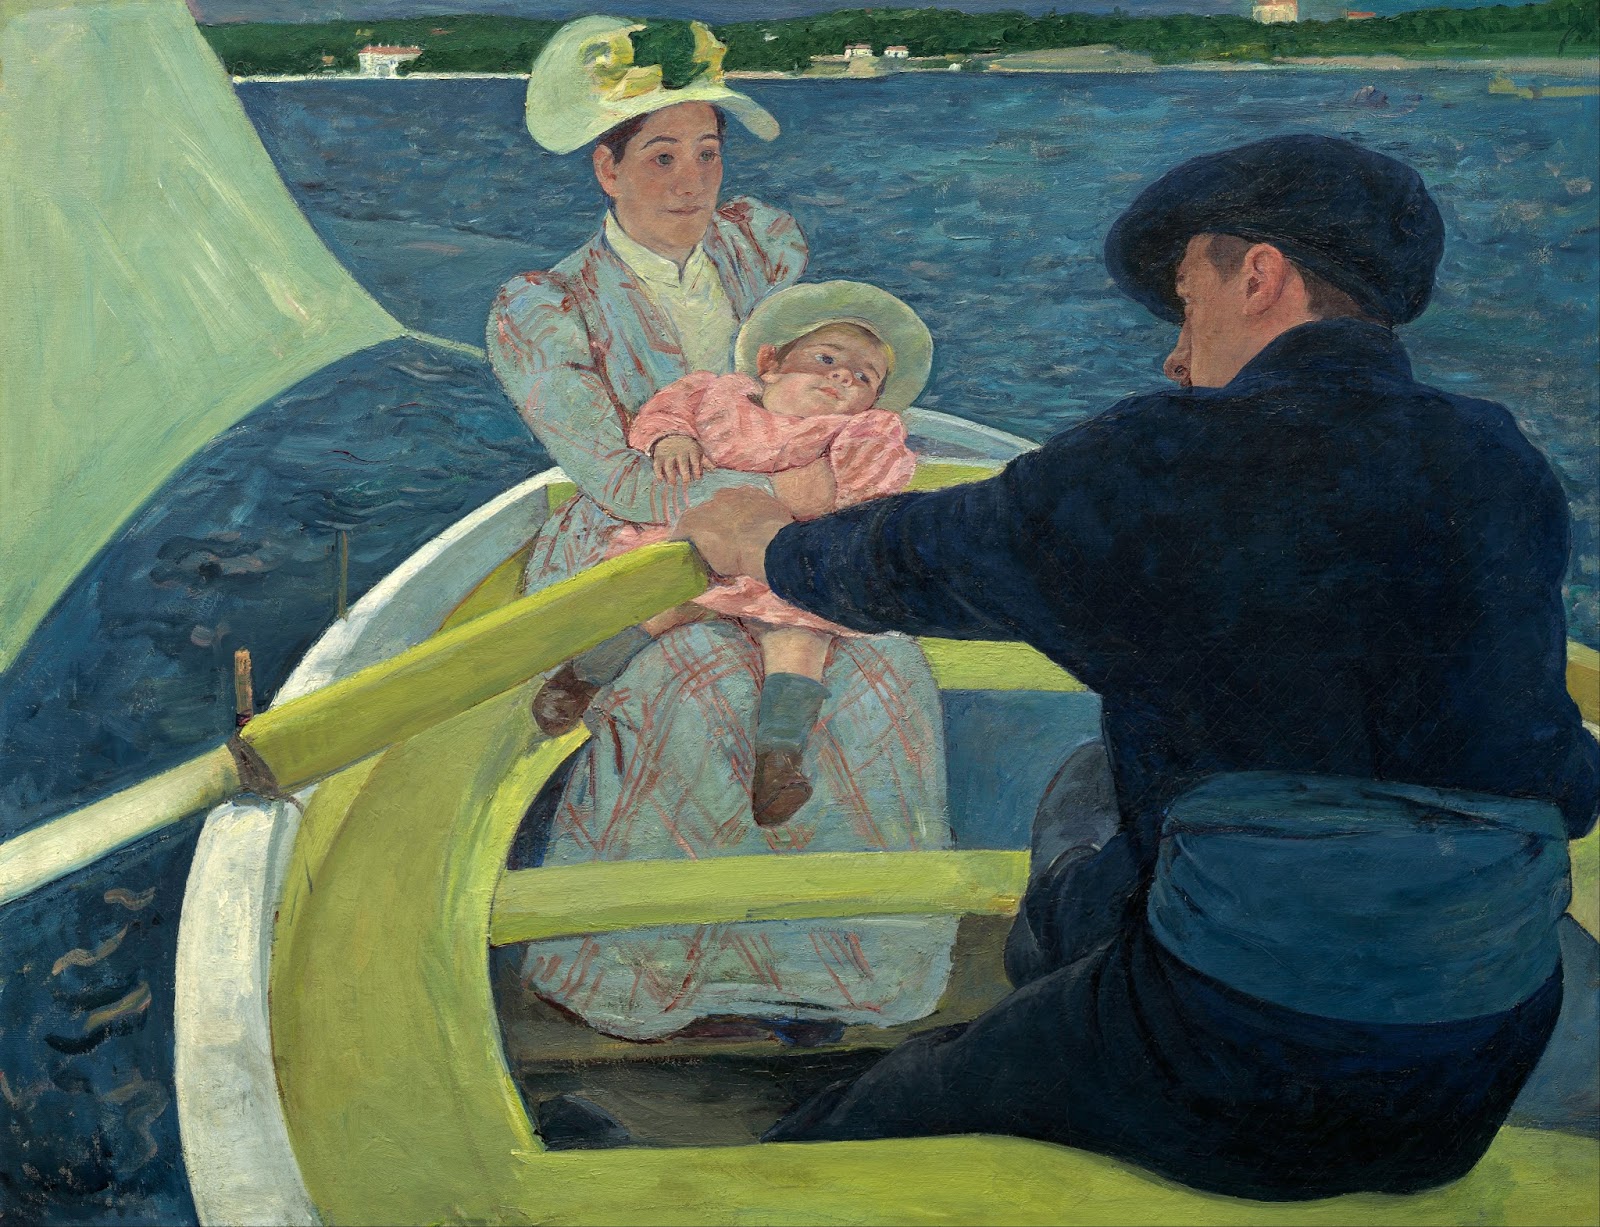 船上派对 by 玛丽· 卡萨特 - 1893–1894 